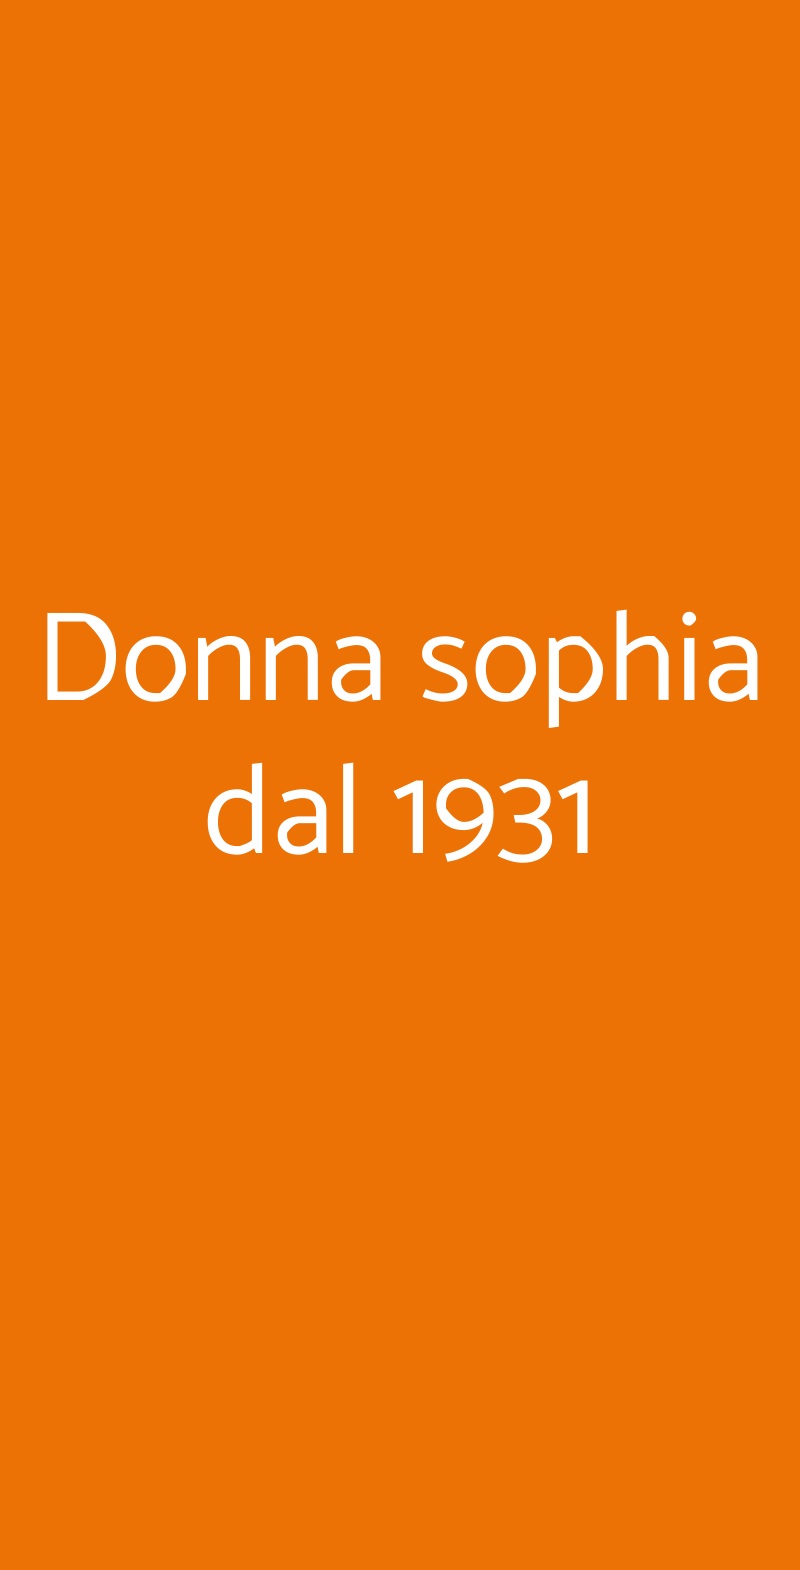 Donna sophia dal 1931 Milano menù 1 pagina